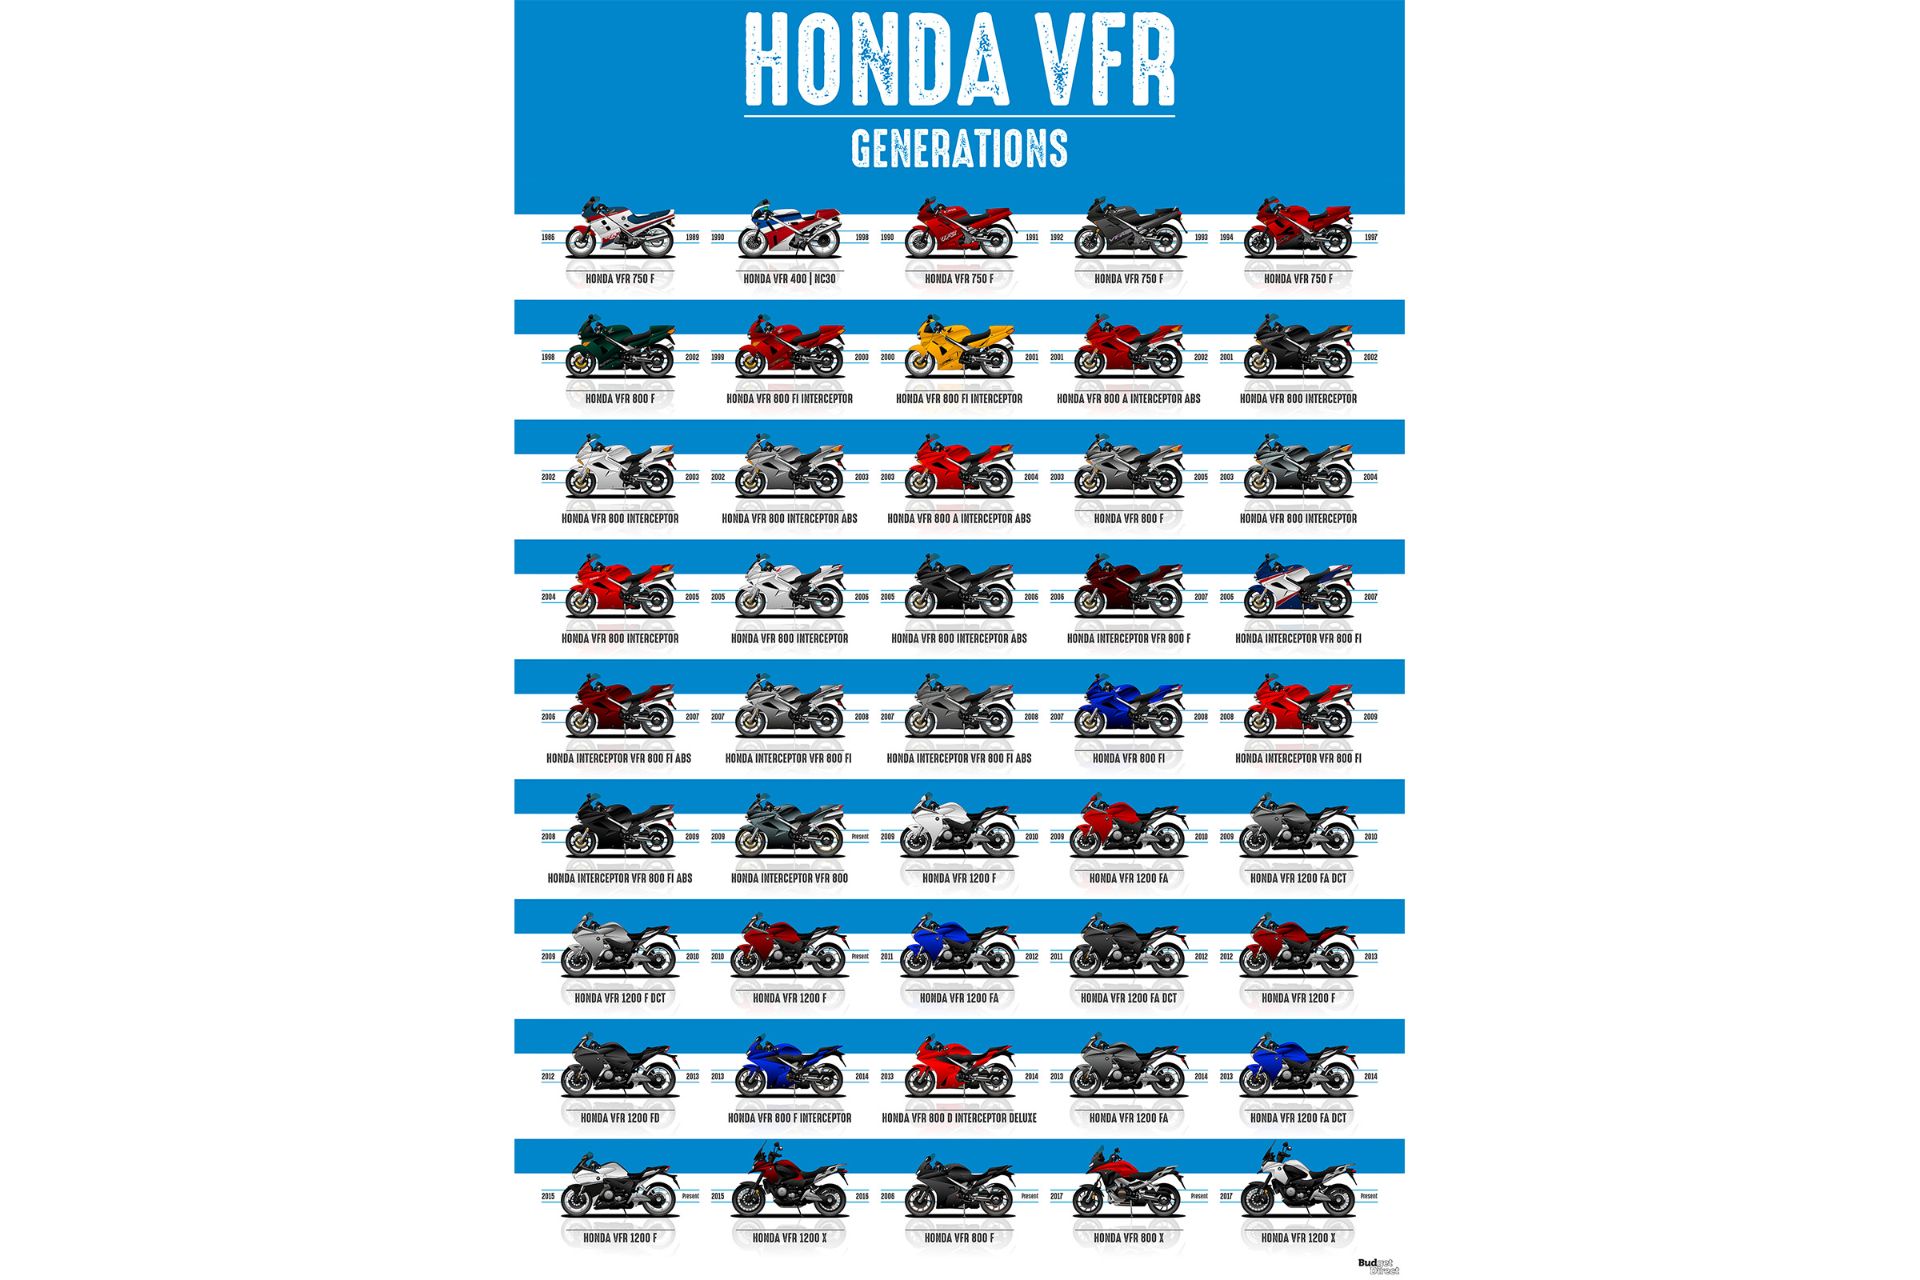 نسل های مختلف خودرو هوندا آکورد / Honda Accord generations